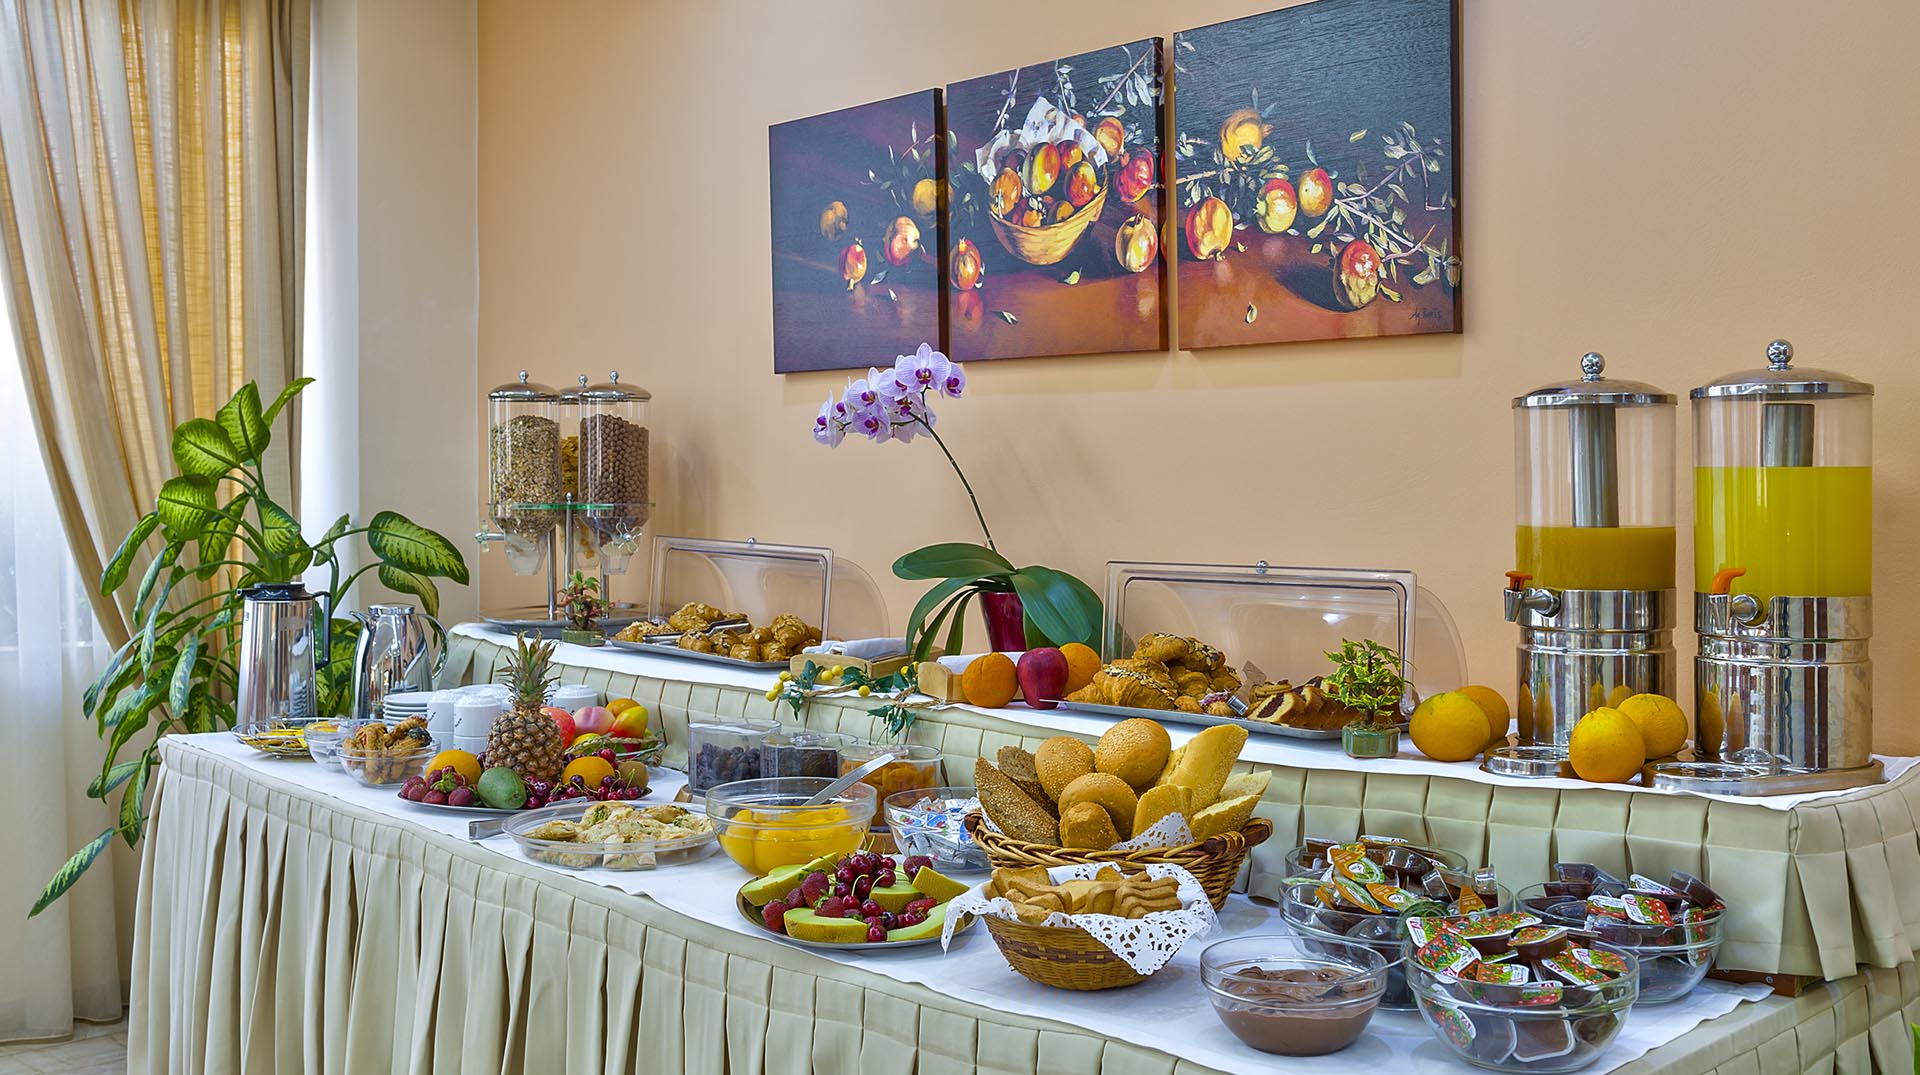 Nefeli Hotel's breakfast buffet